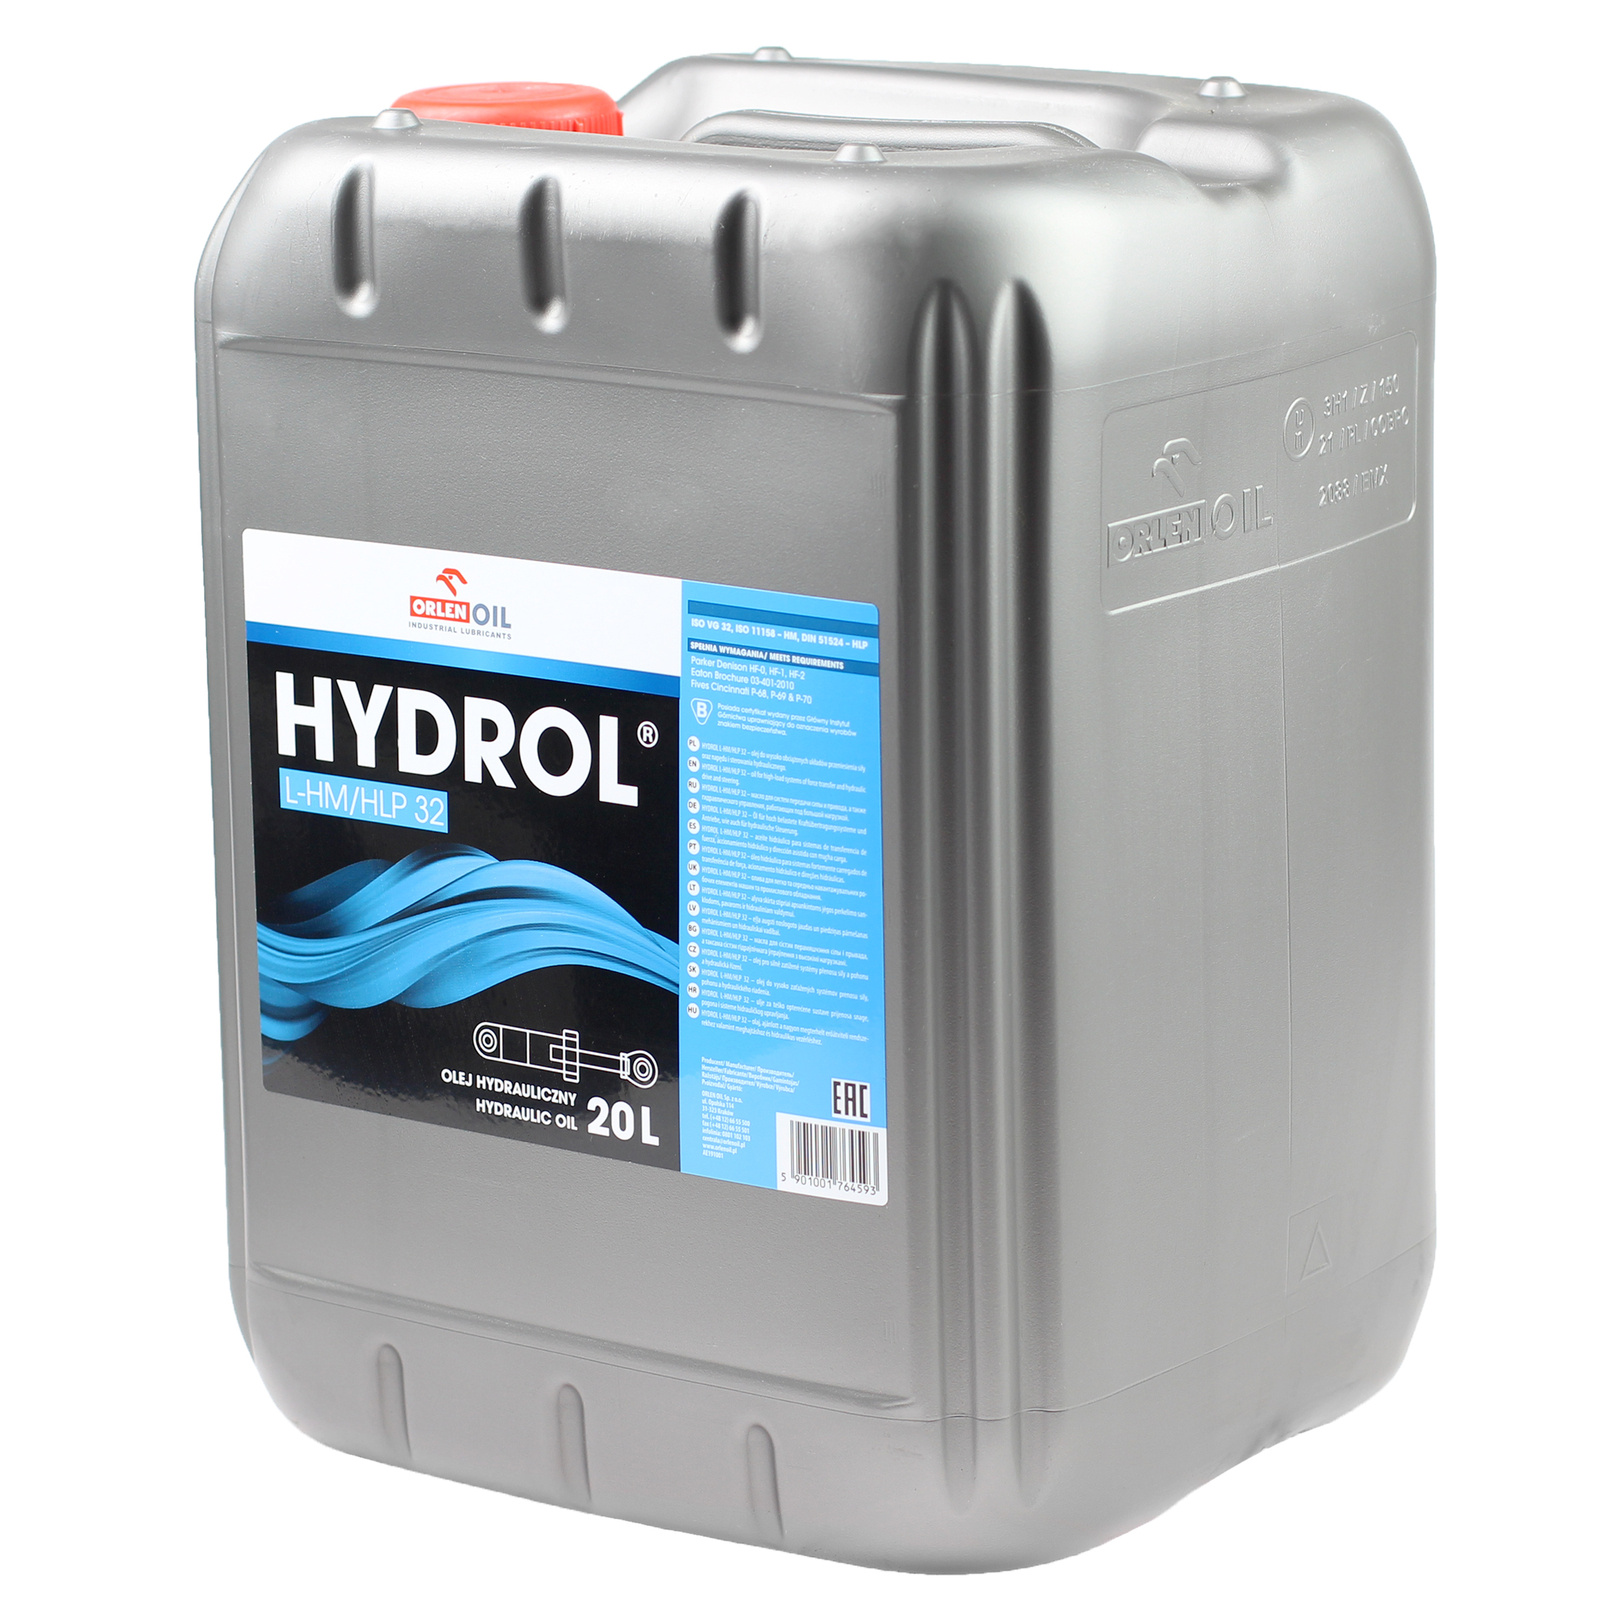 Гидравлическое масло Orlen HYDROL L-HM/HLP 32 20 л.